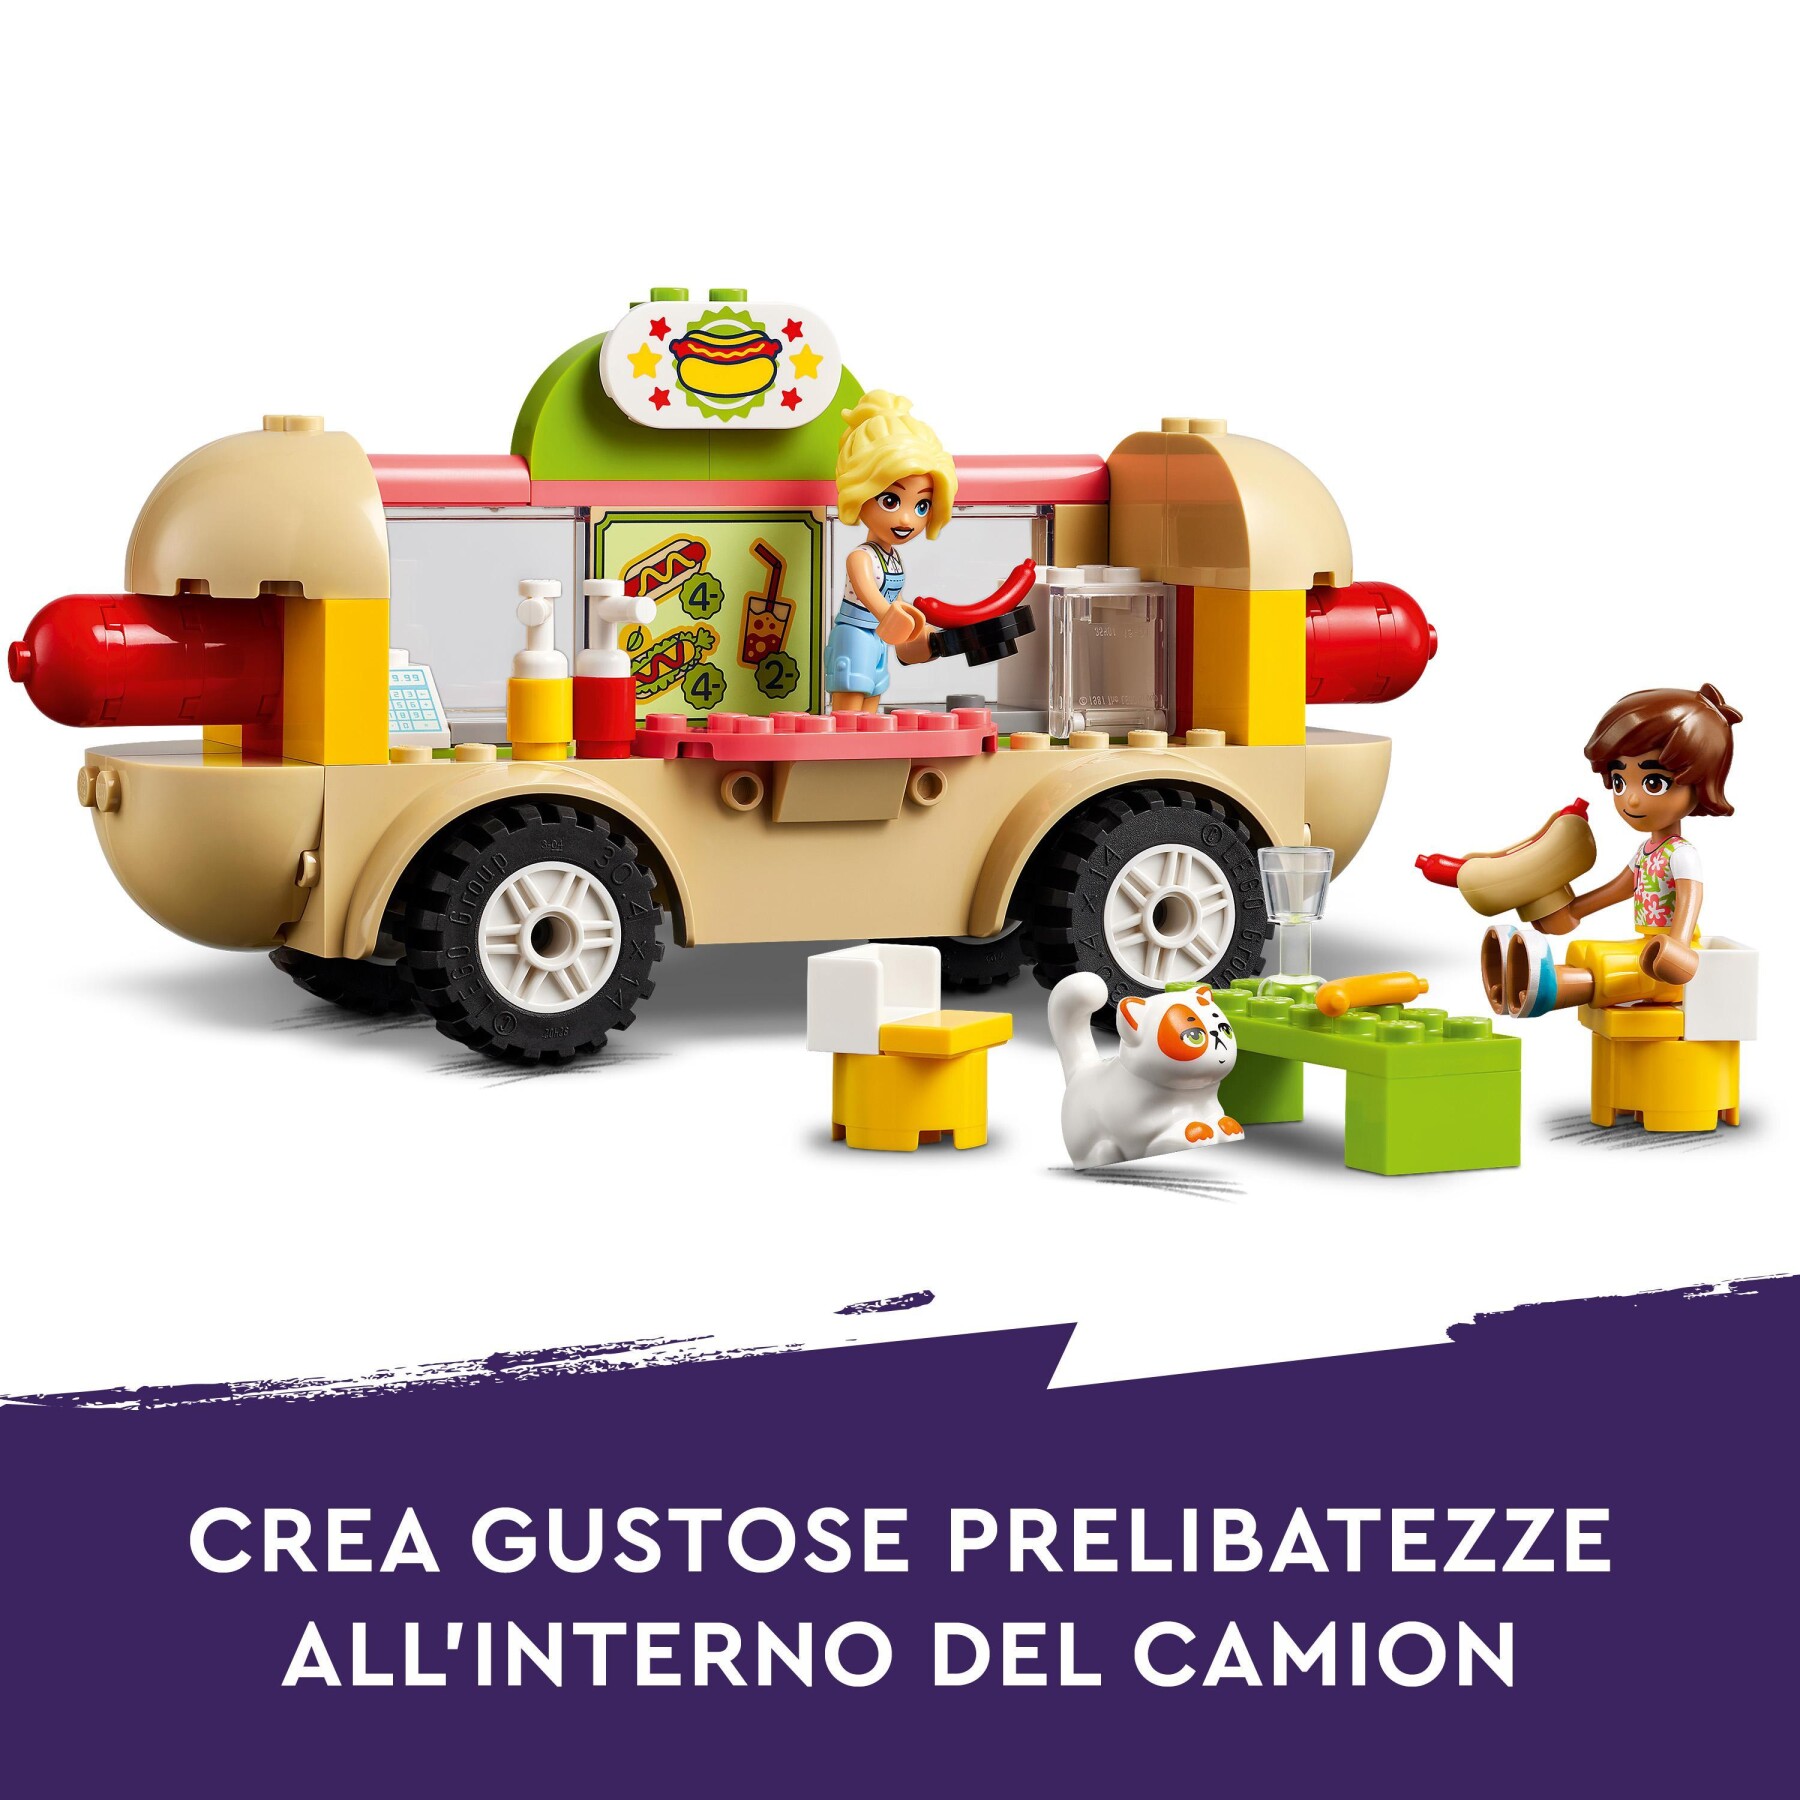 Lego friends 42633 food truck hot-dog, giochi per bambini 4+, piccolo camion giocattolo con cucina, 2 mini bamboline e gatto - LEGO FRIENDS